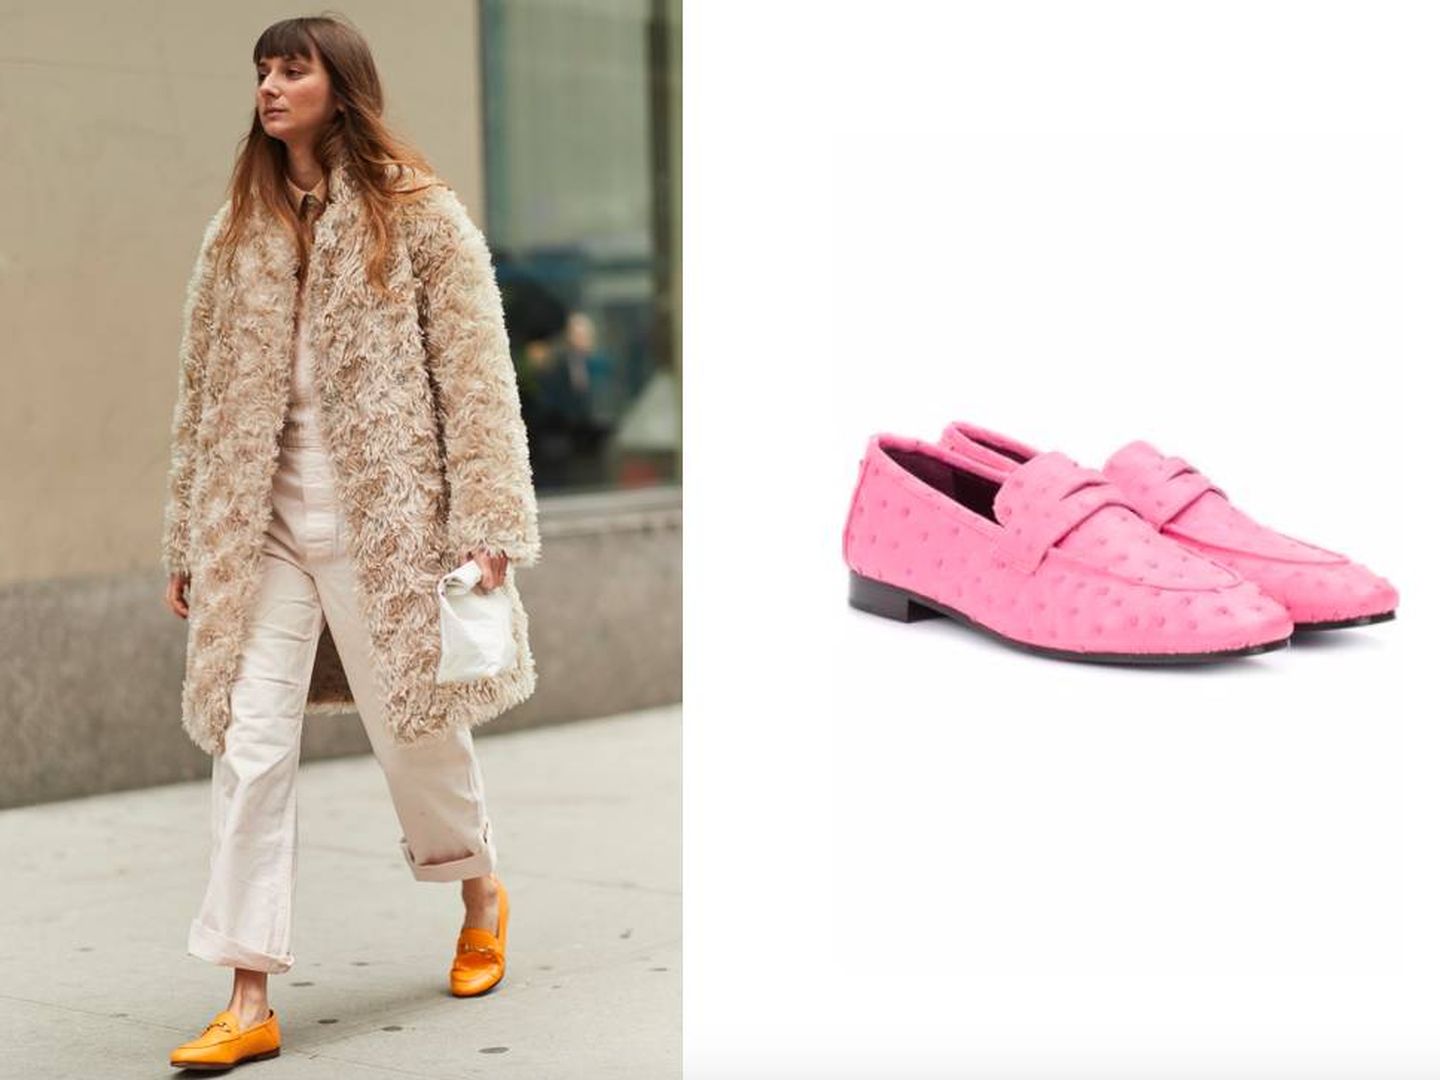 Esta insider opta por un outfit beis con zapatos naranjas (Imaxtree). Inspírate y crea un look similar con estos en rosa de Bougeotte (612 €).